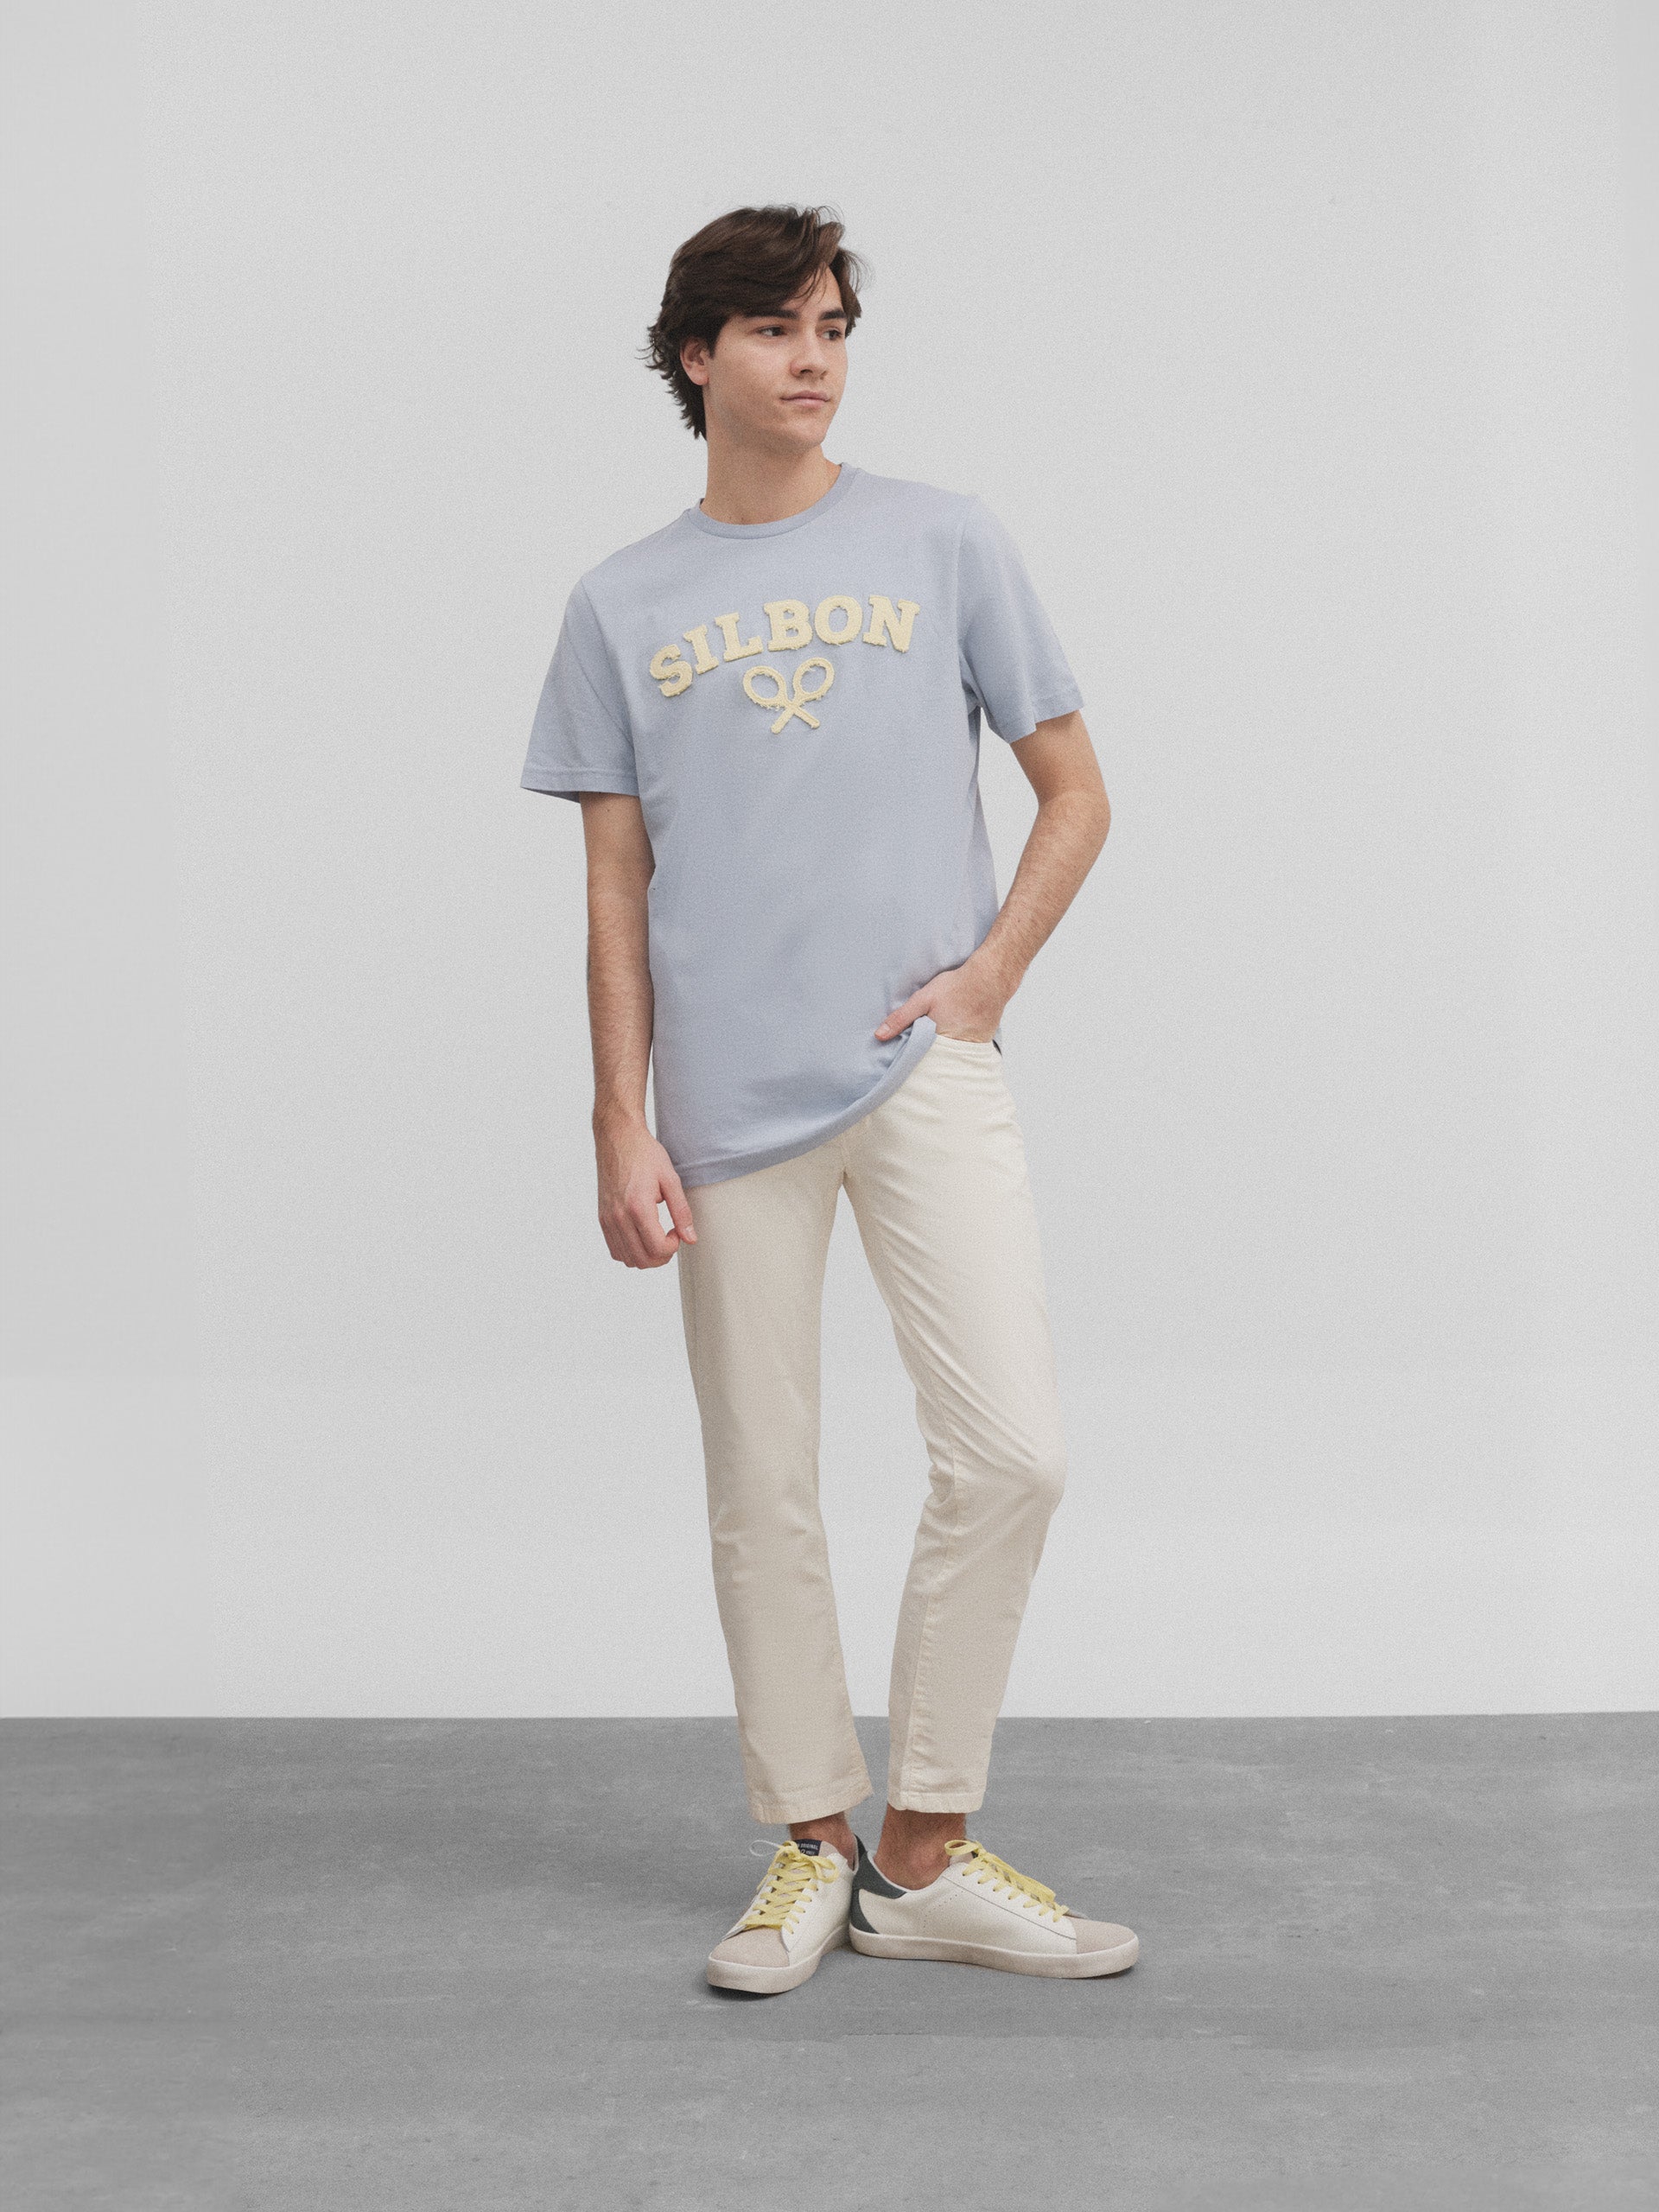 T-shirt raquette Silbon bleu moyen